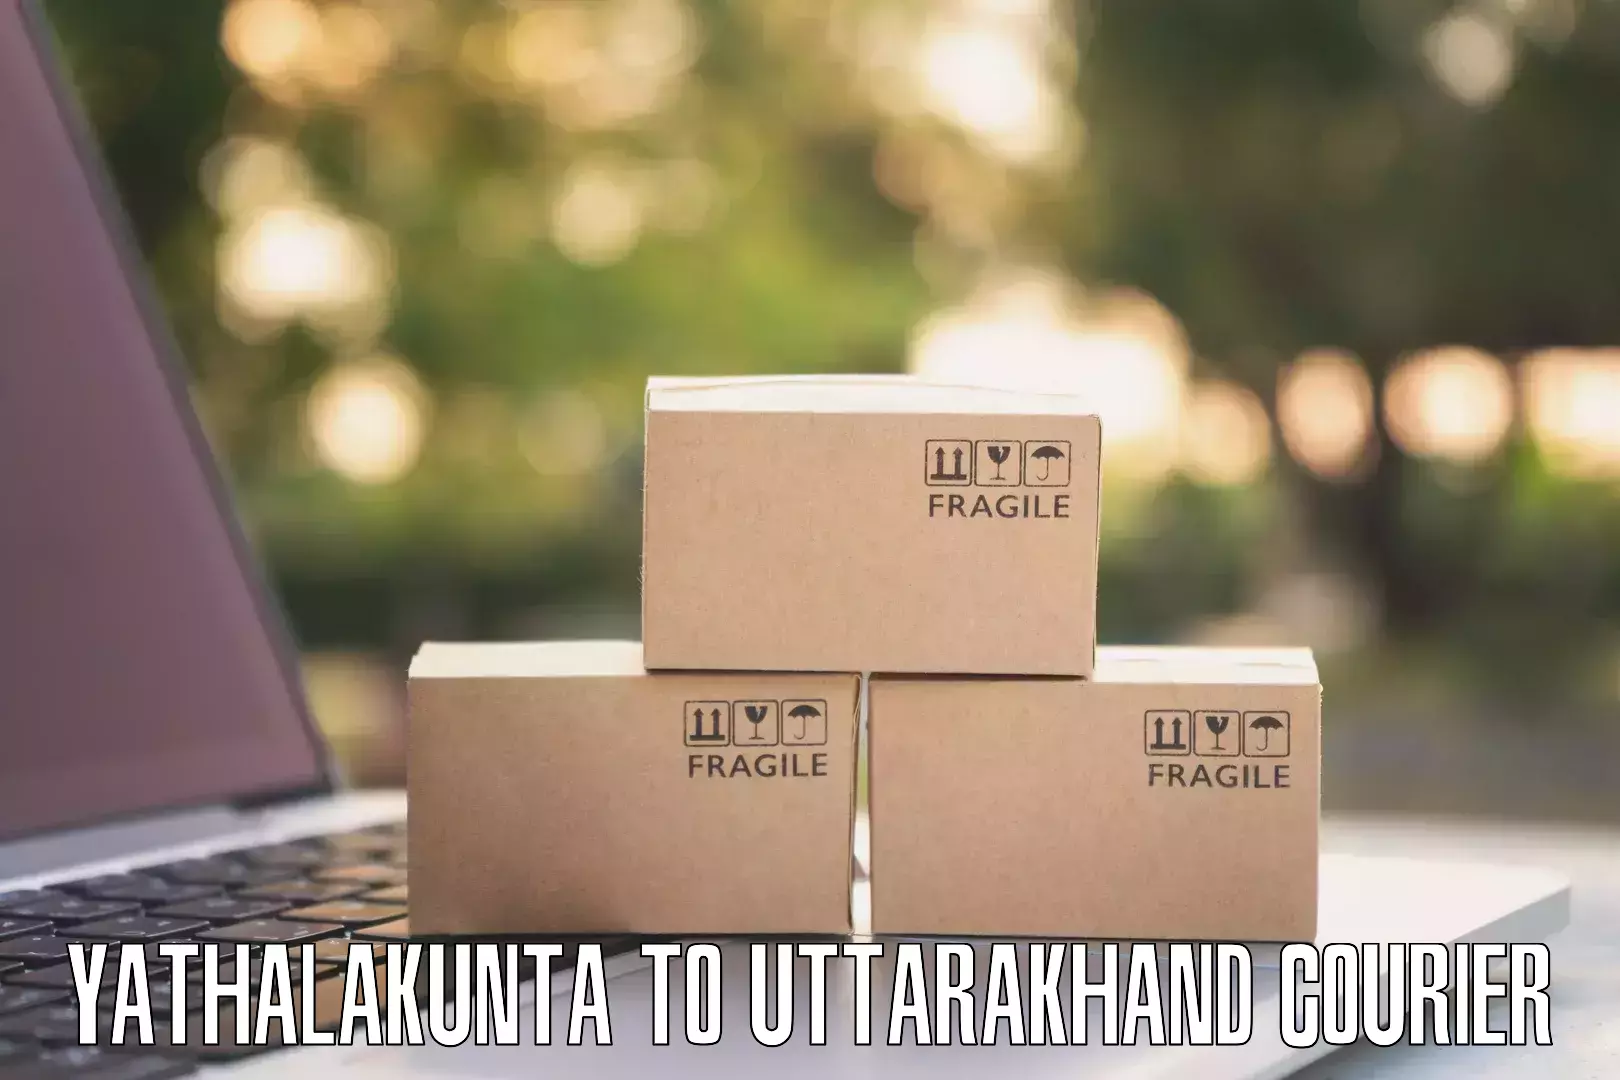 Express package handling Yathalakunta to Uttarkashi